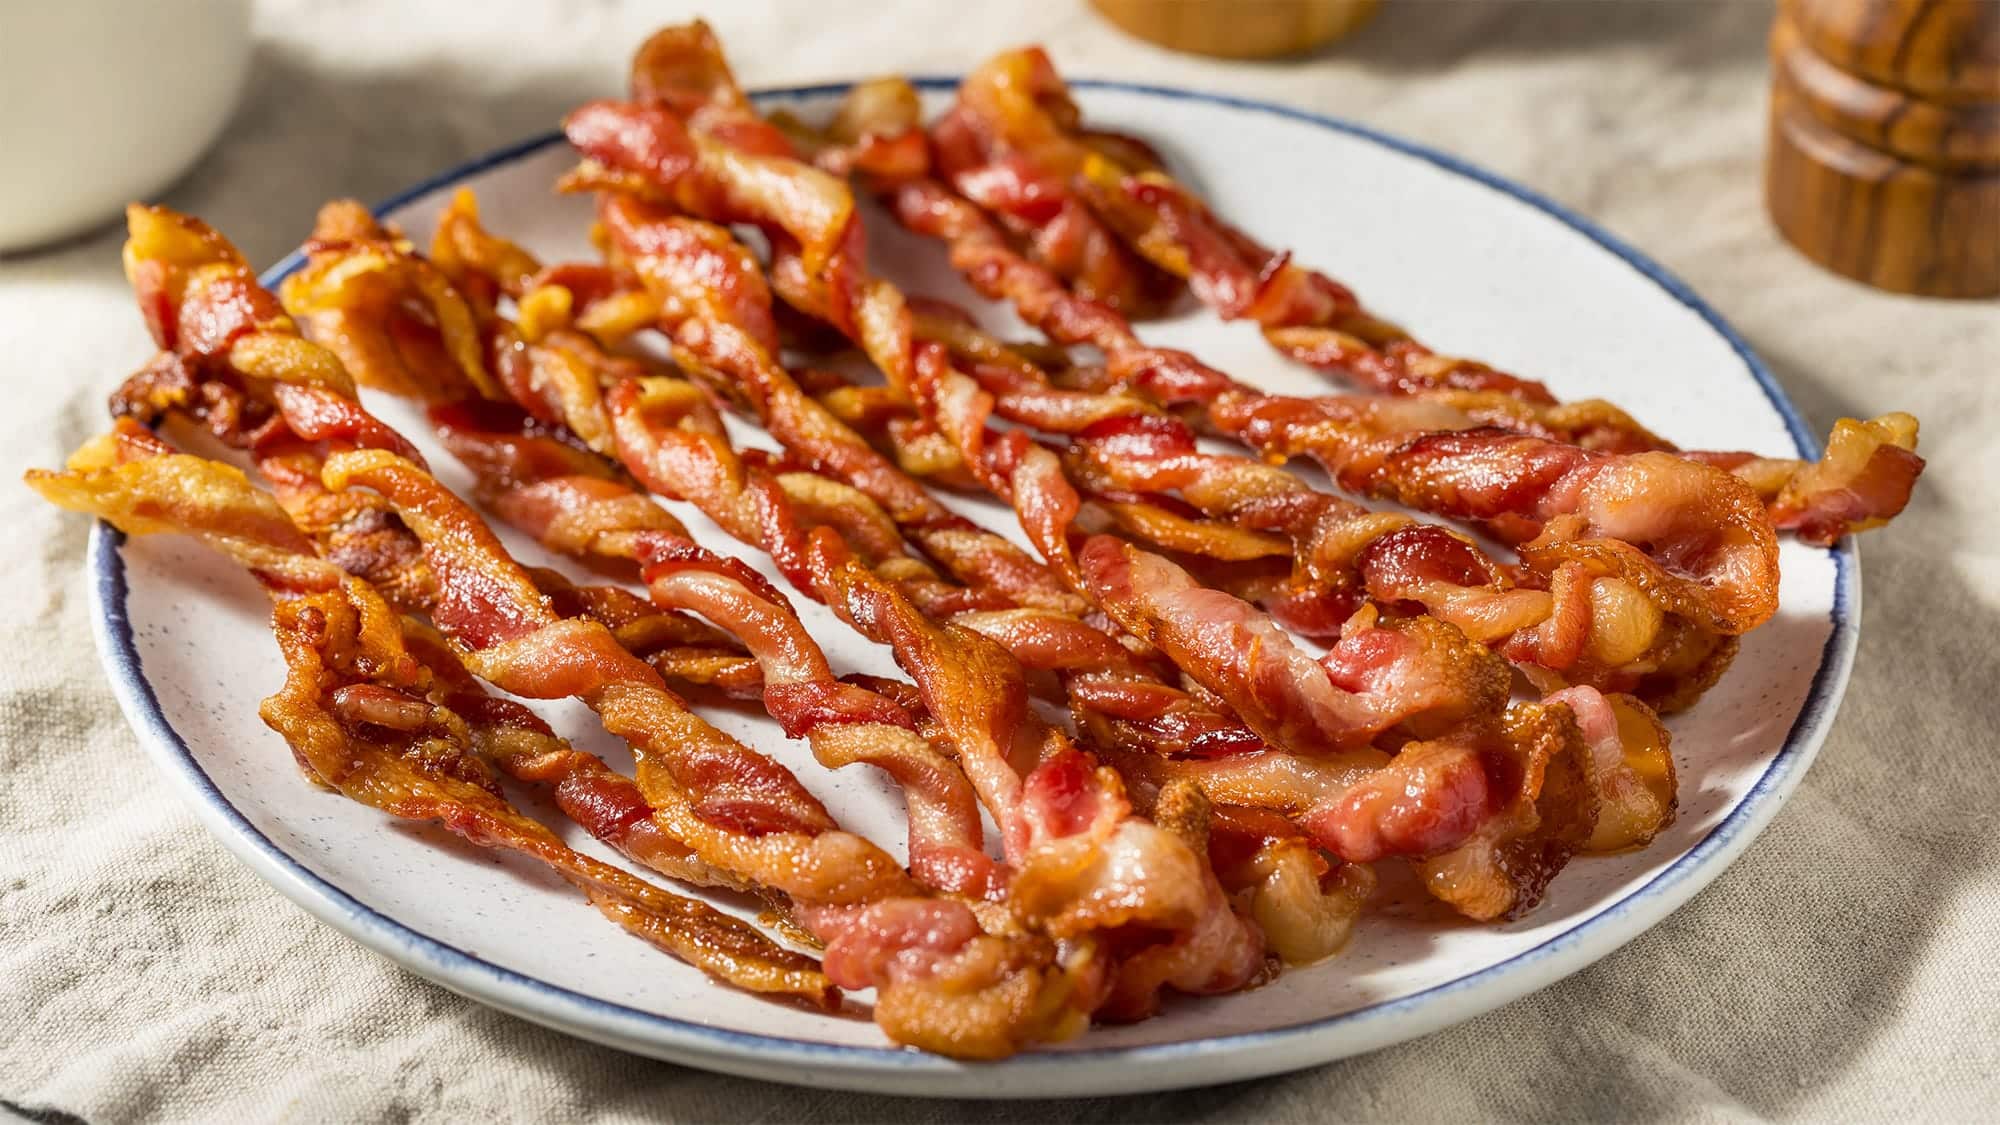 Des tranches de bacon en forme de twist